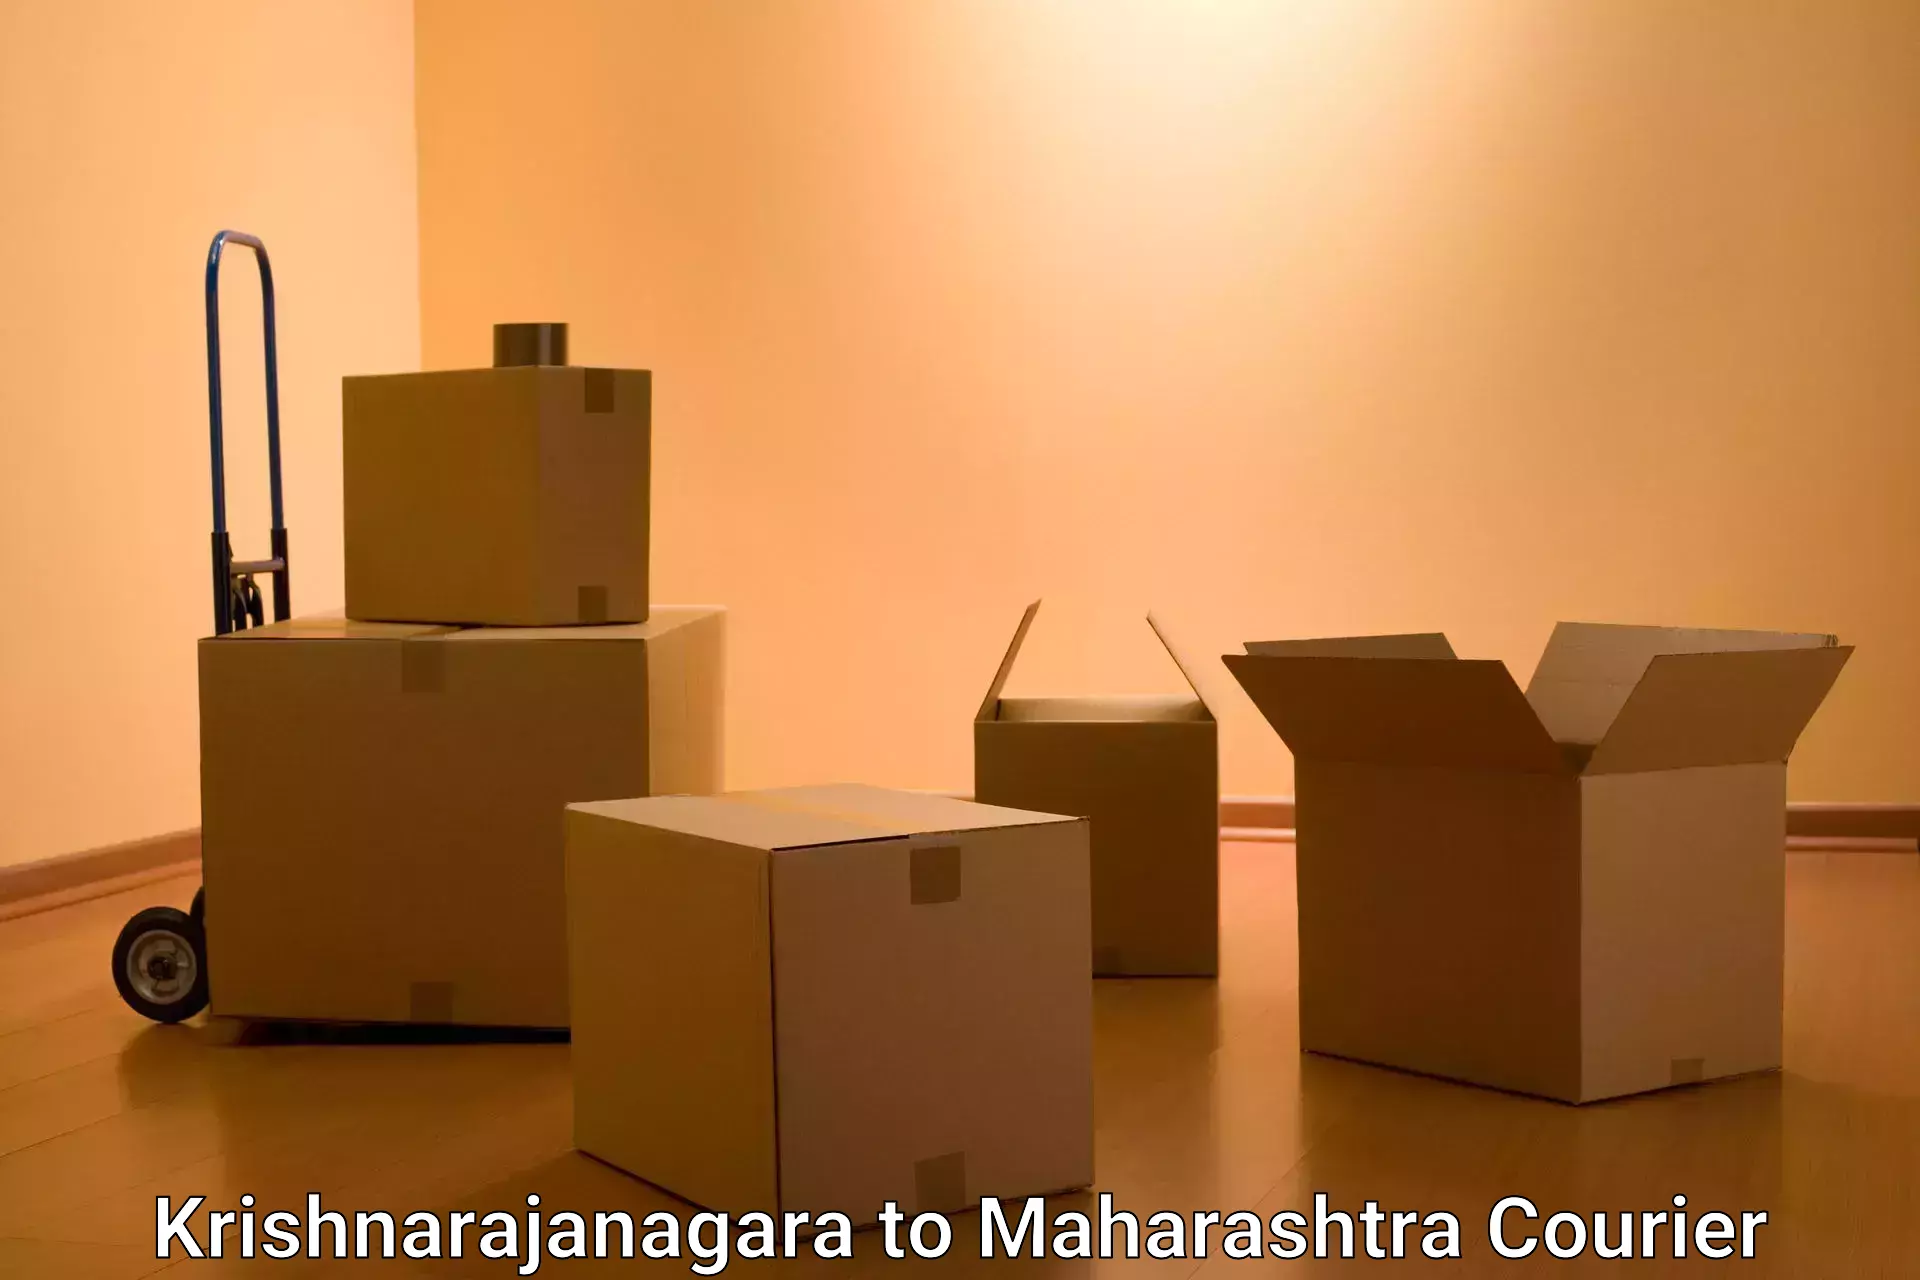 Speedy delivery service Krishnarajanagara to Maharashtra